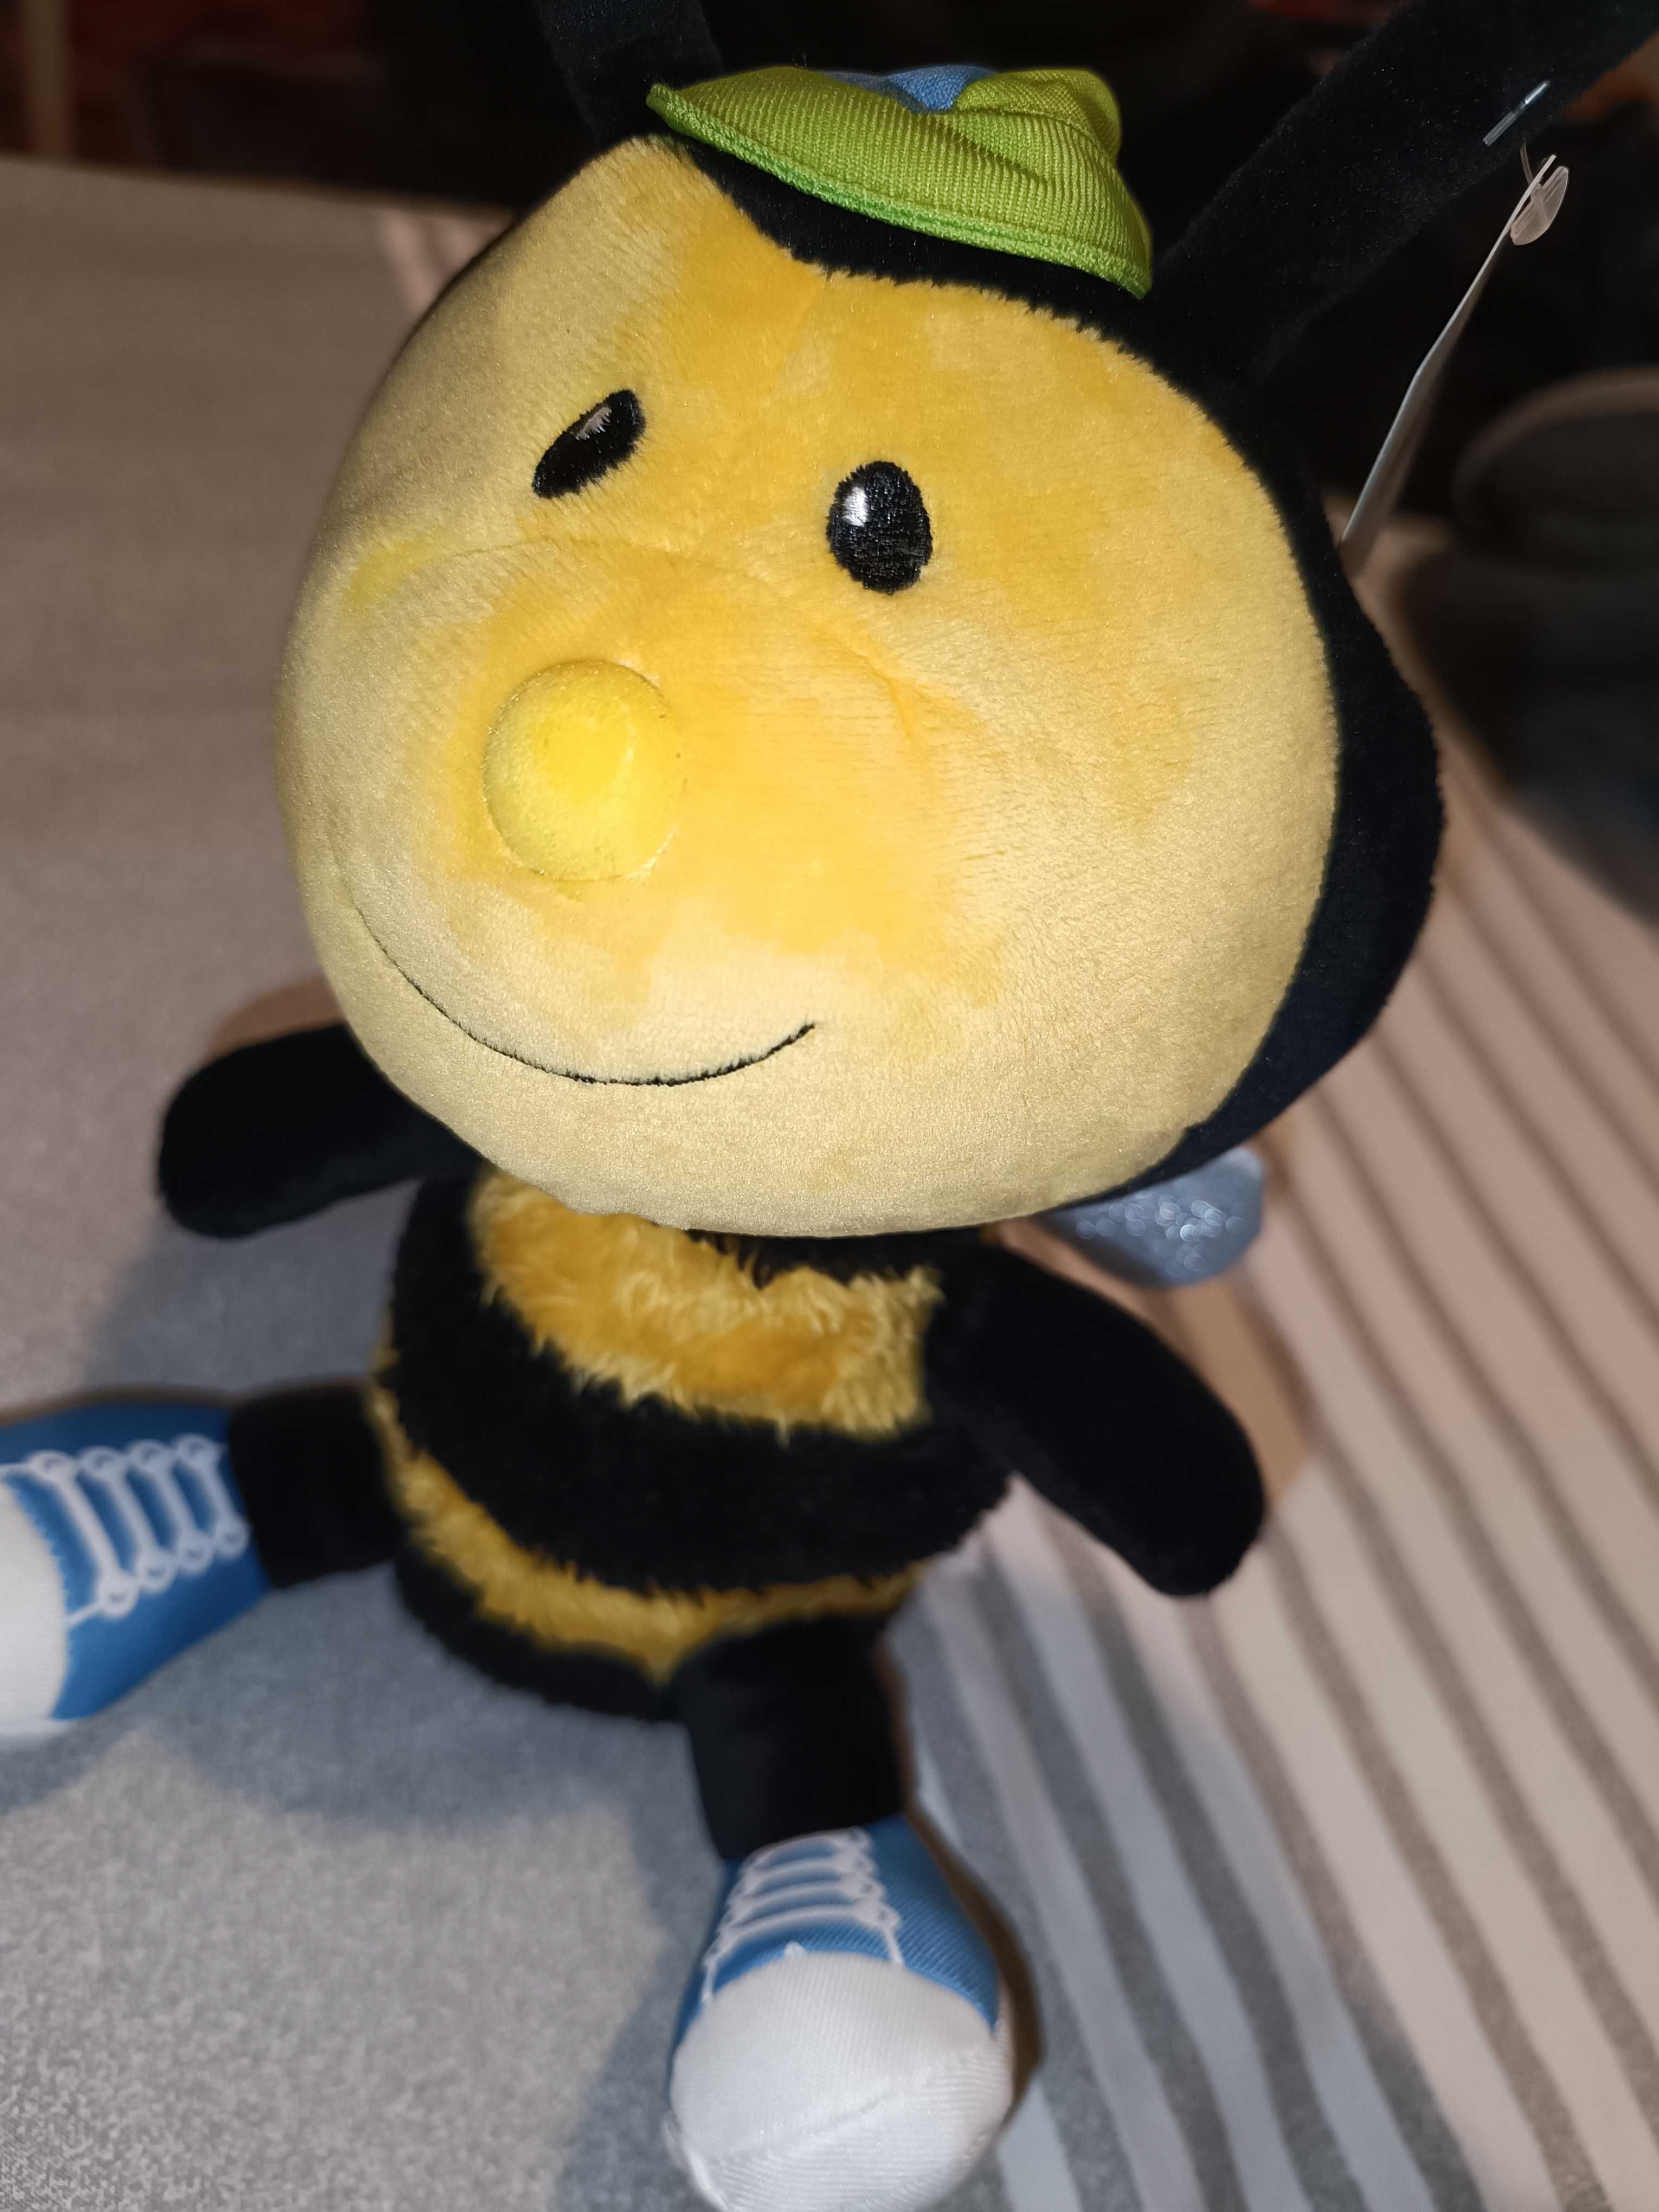 [NOVO c/ etiqueta] Peluche Abelha Billy - Bee Happy